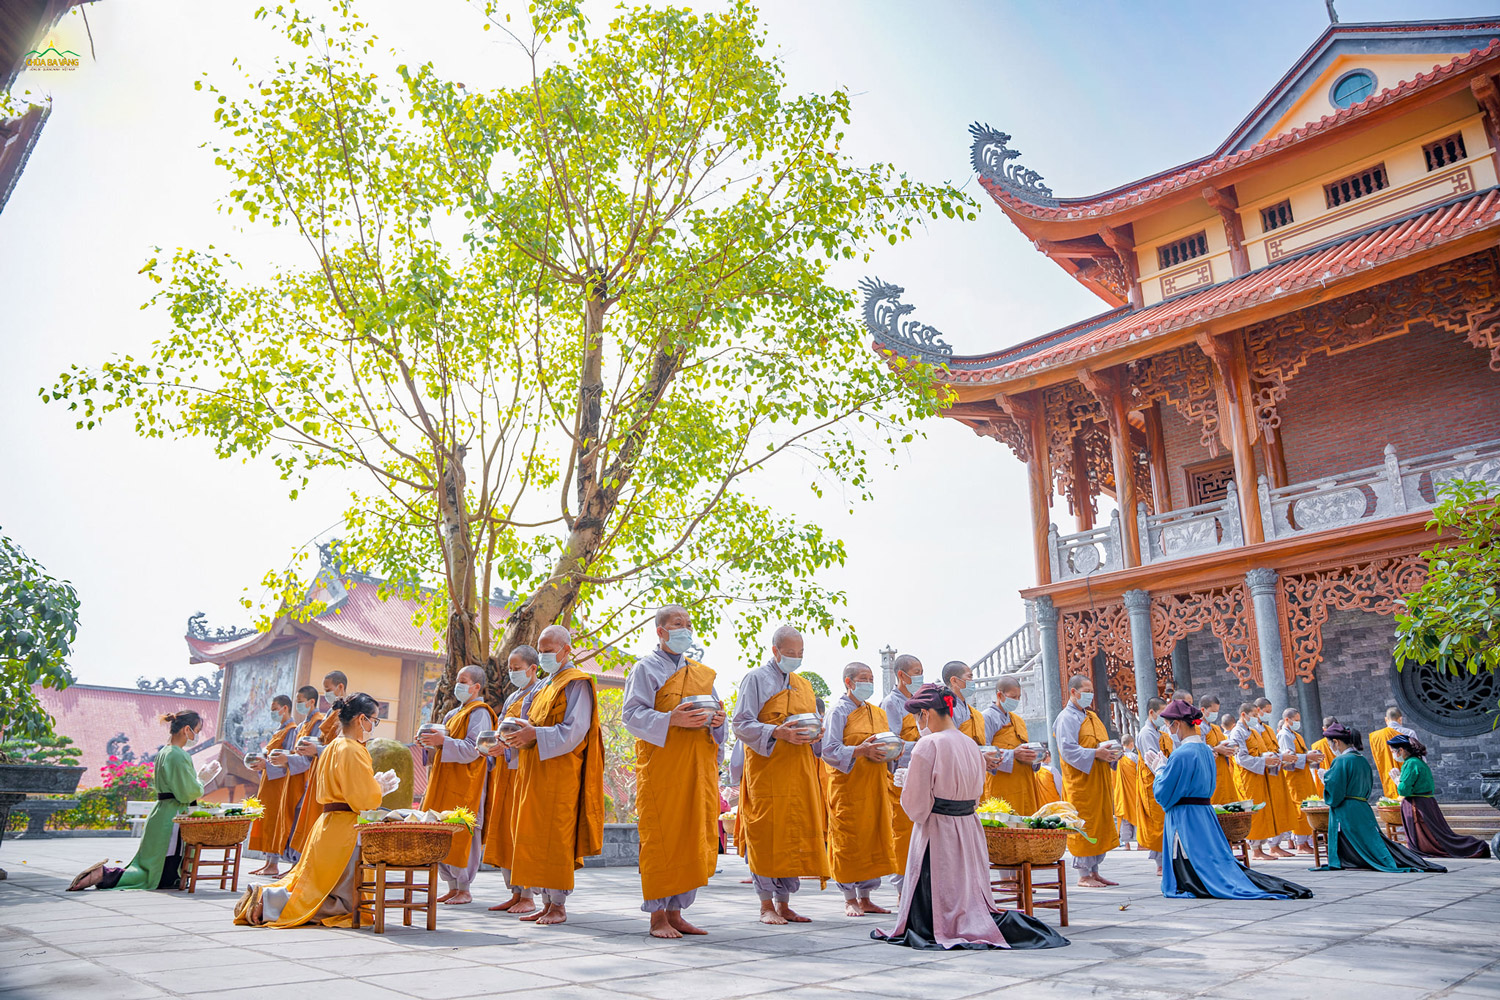   Với những bộ trang phục thời nhà Trần, các Phật tử thành tâm chuẩn bị vật thực để dâng lên cúng dường chư Ni chùa Ba Vàng.  